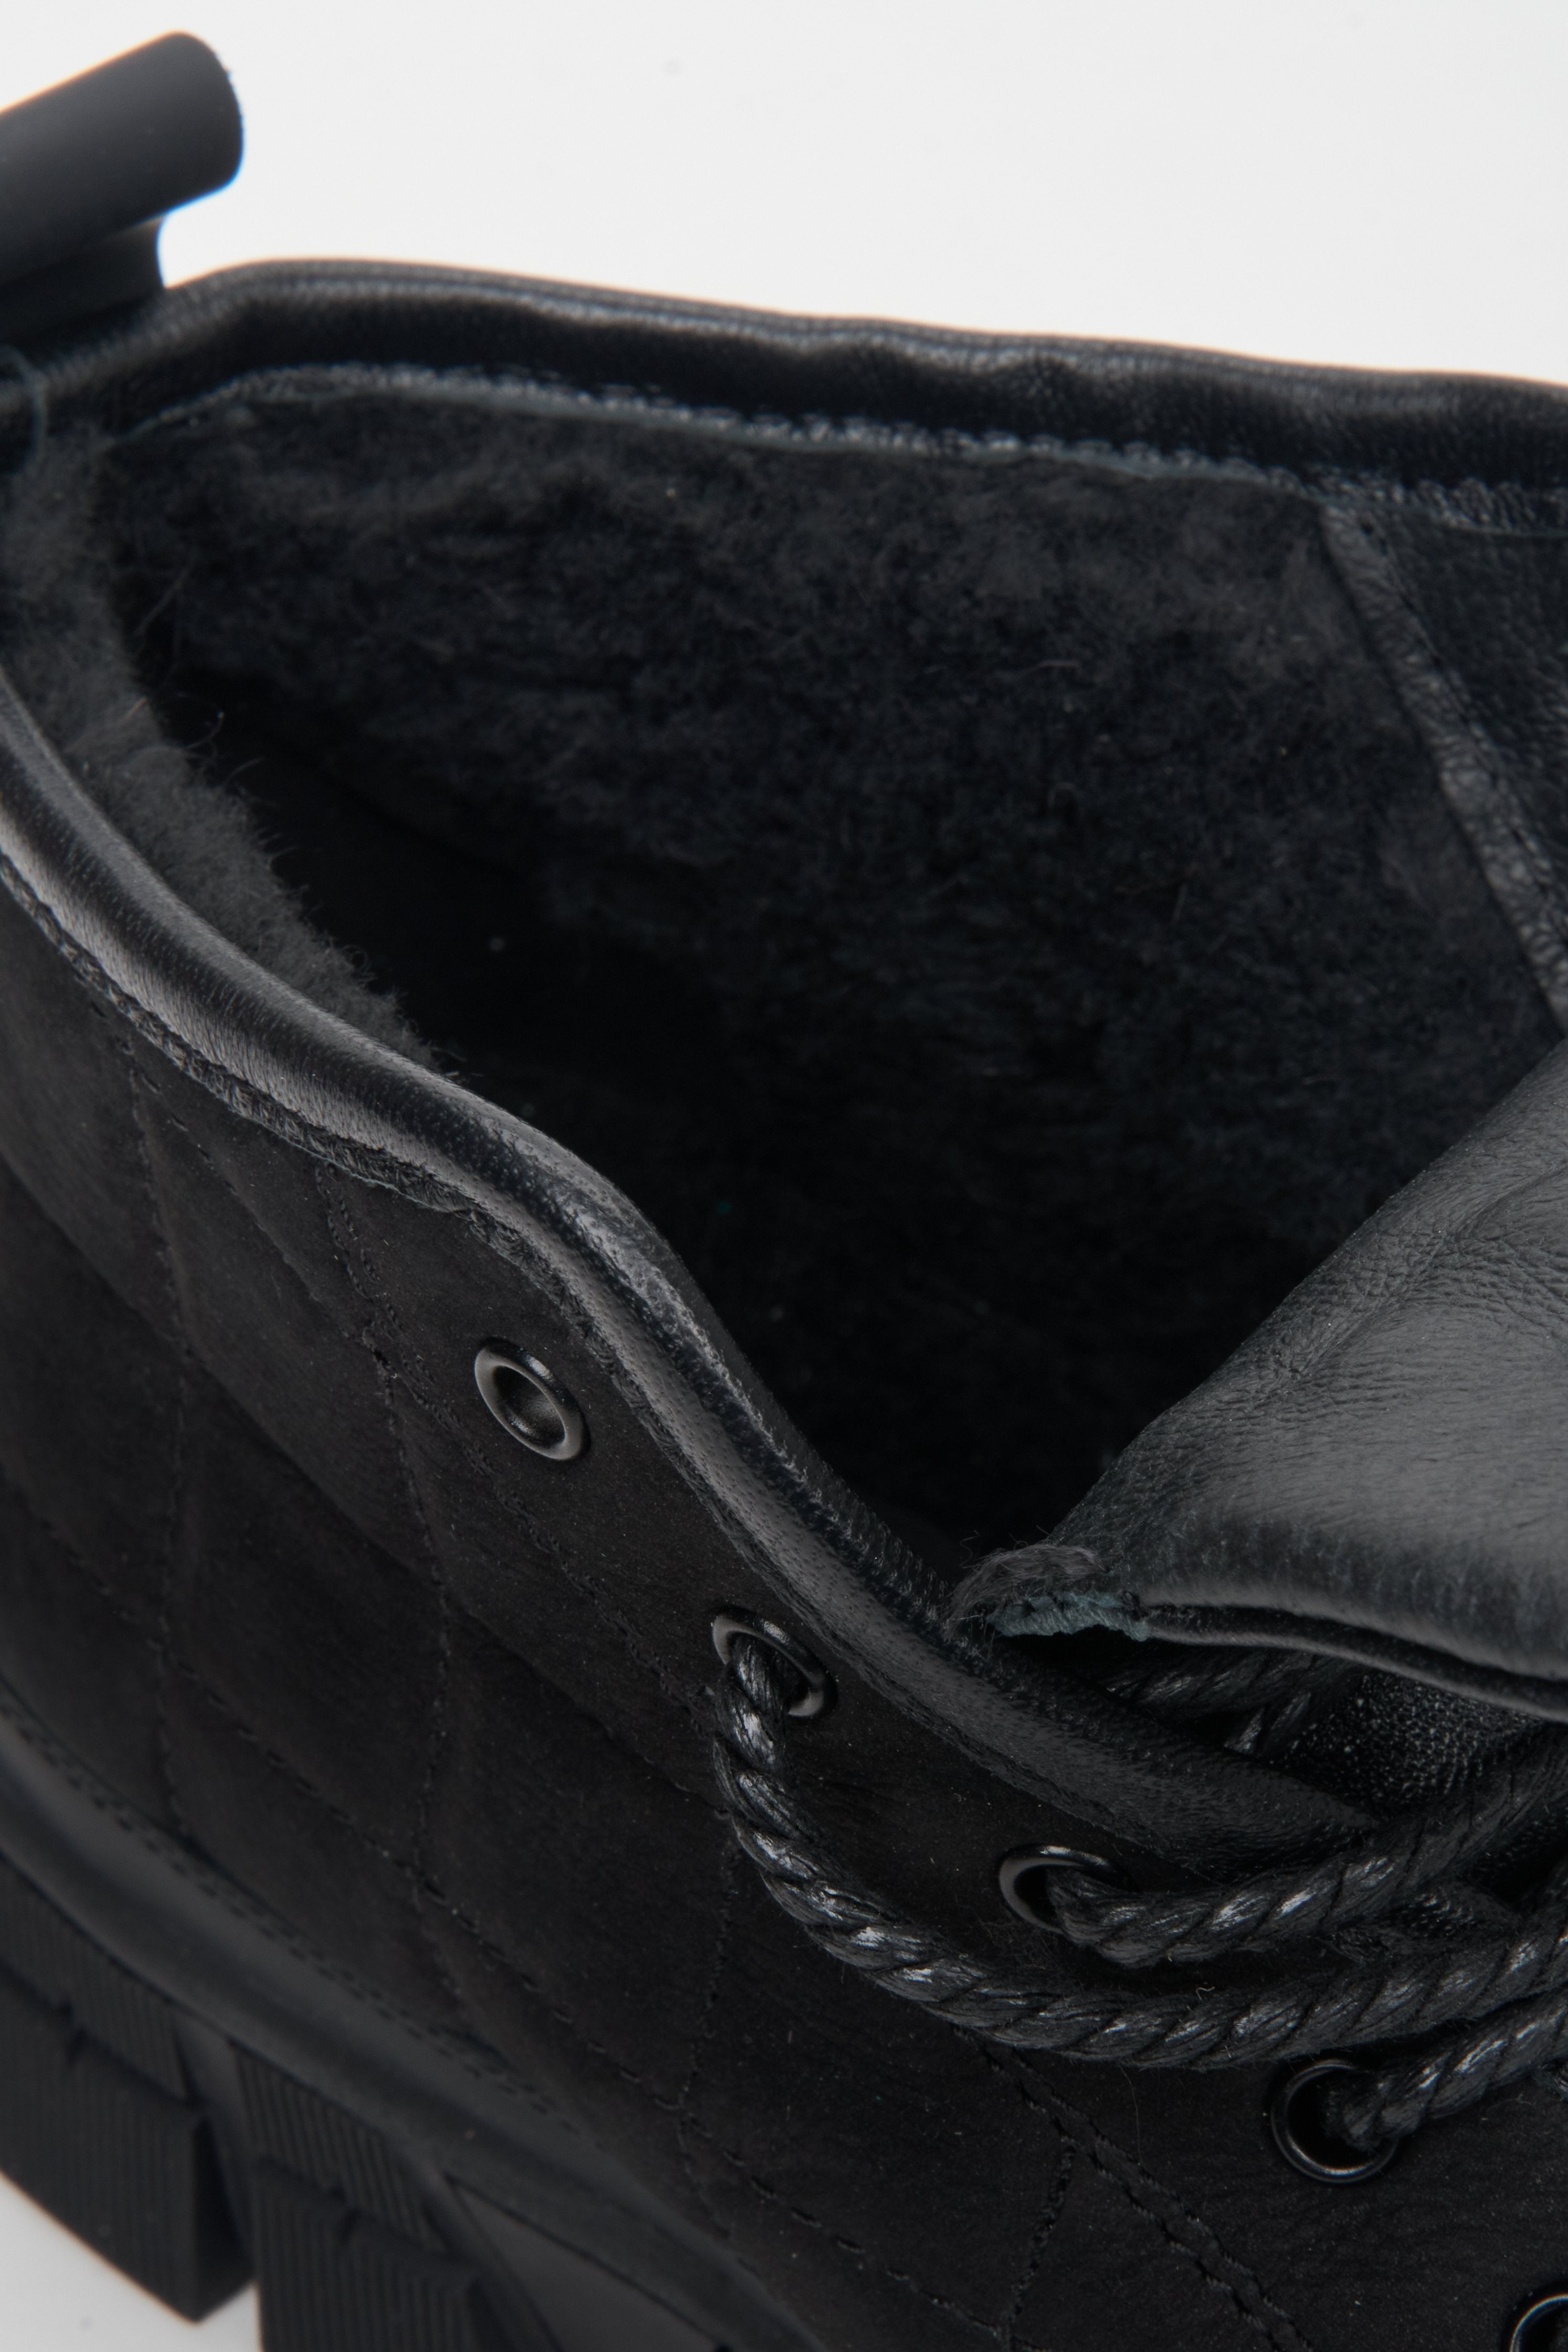 Botki męskie zimowe w kolorze czarnym marki Estro - zbliżenie na wypełnienie ocieplające buta.